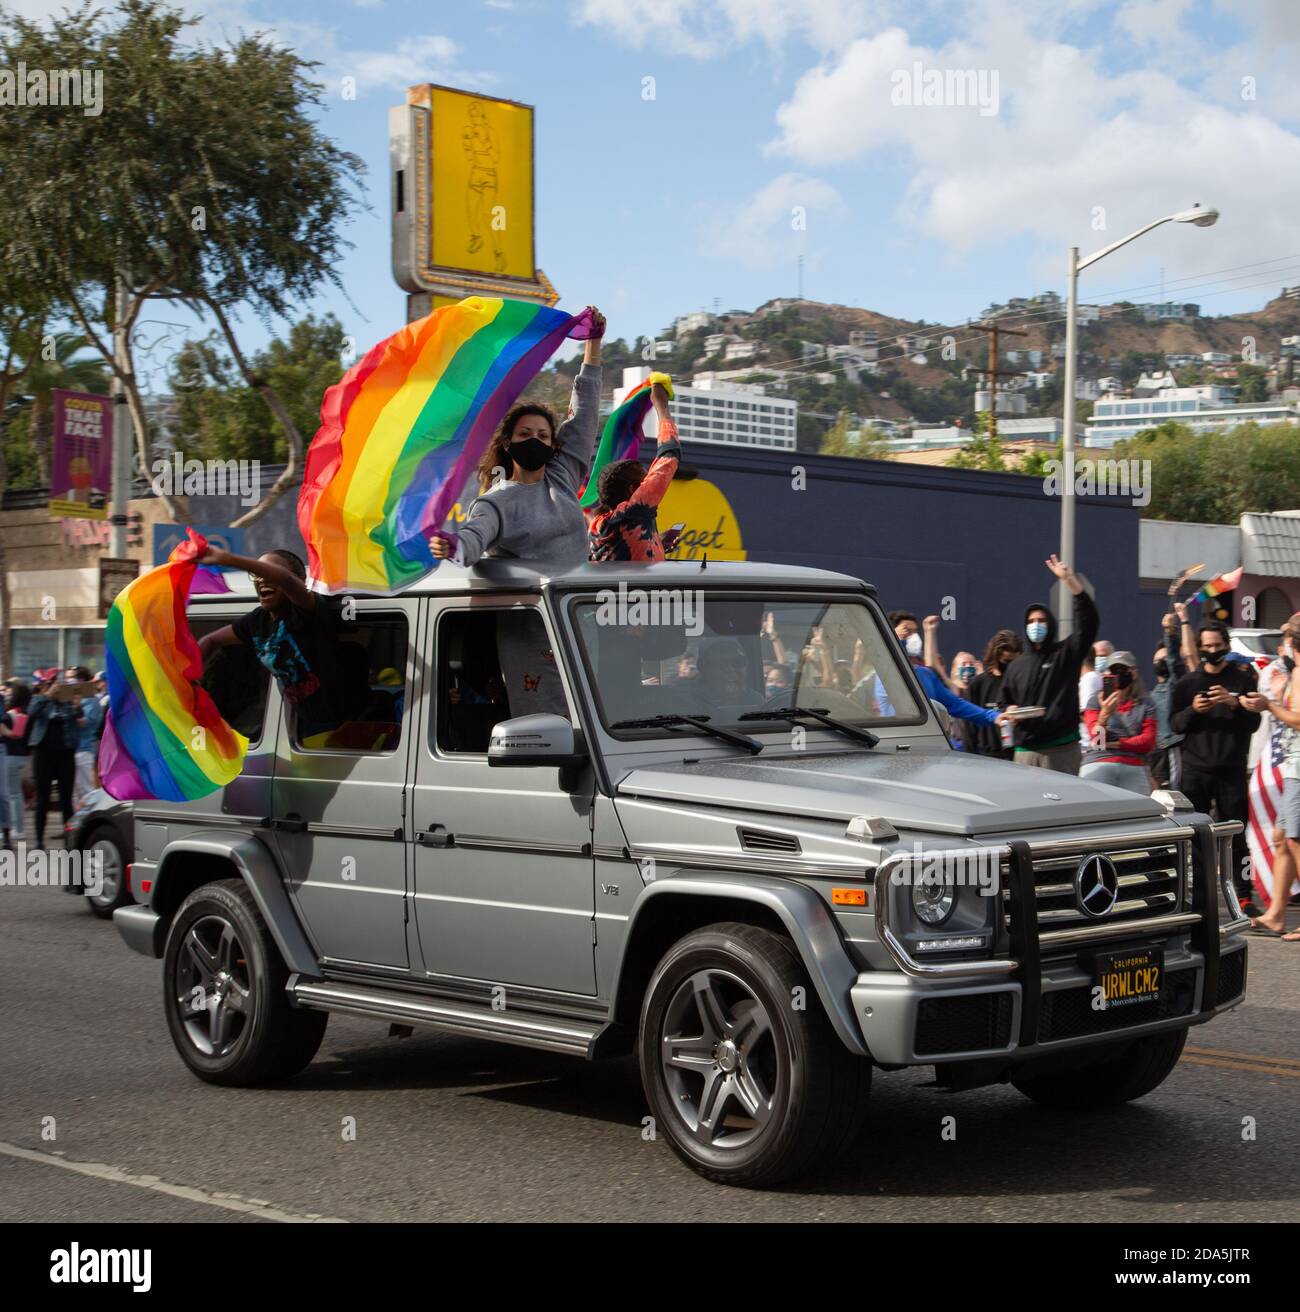 Eine Familie feiert den Sieg von Joe Biden, indem sie während einer improvisierten Parade in West Hollywood, CA, die Regenbogenflagge LGBQT+ aus ihren Autos schwenkt. Stockfoto